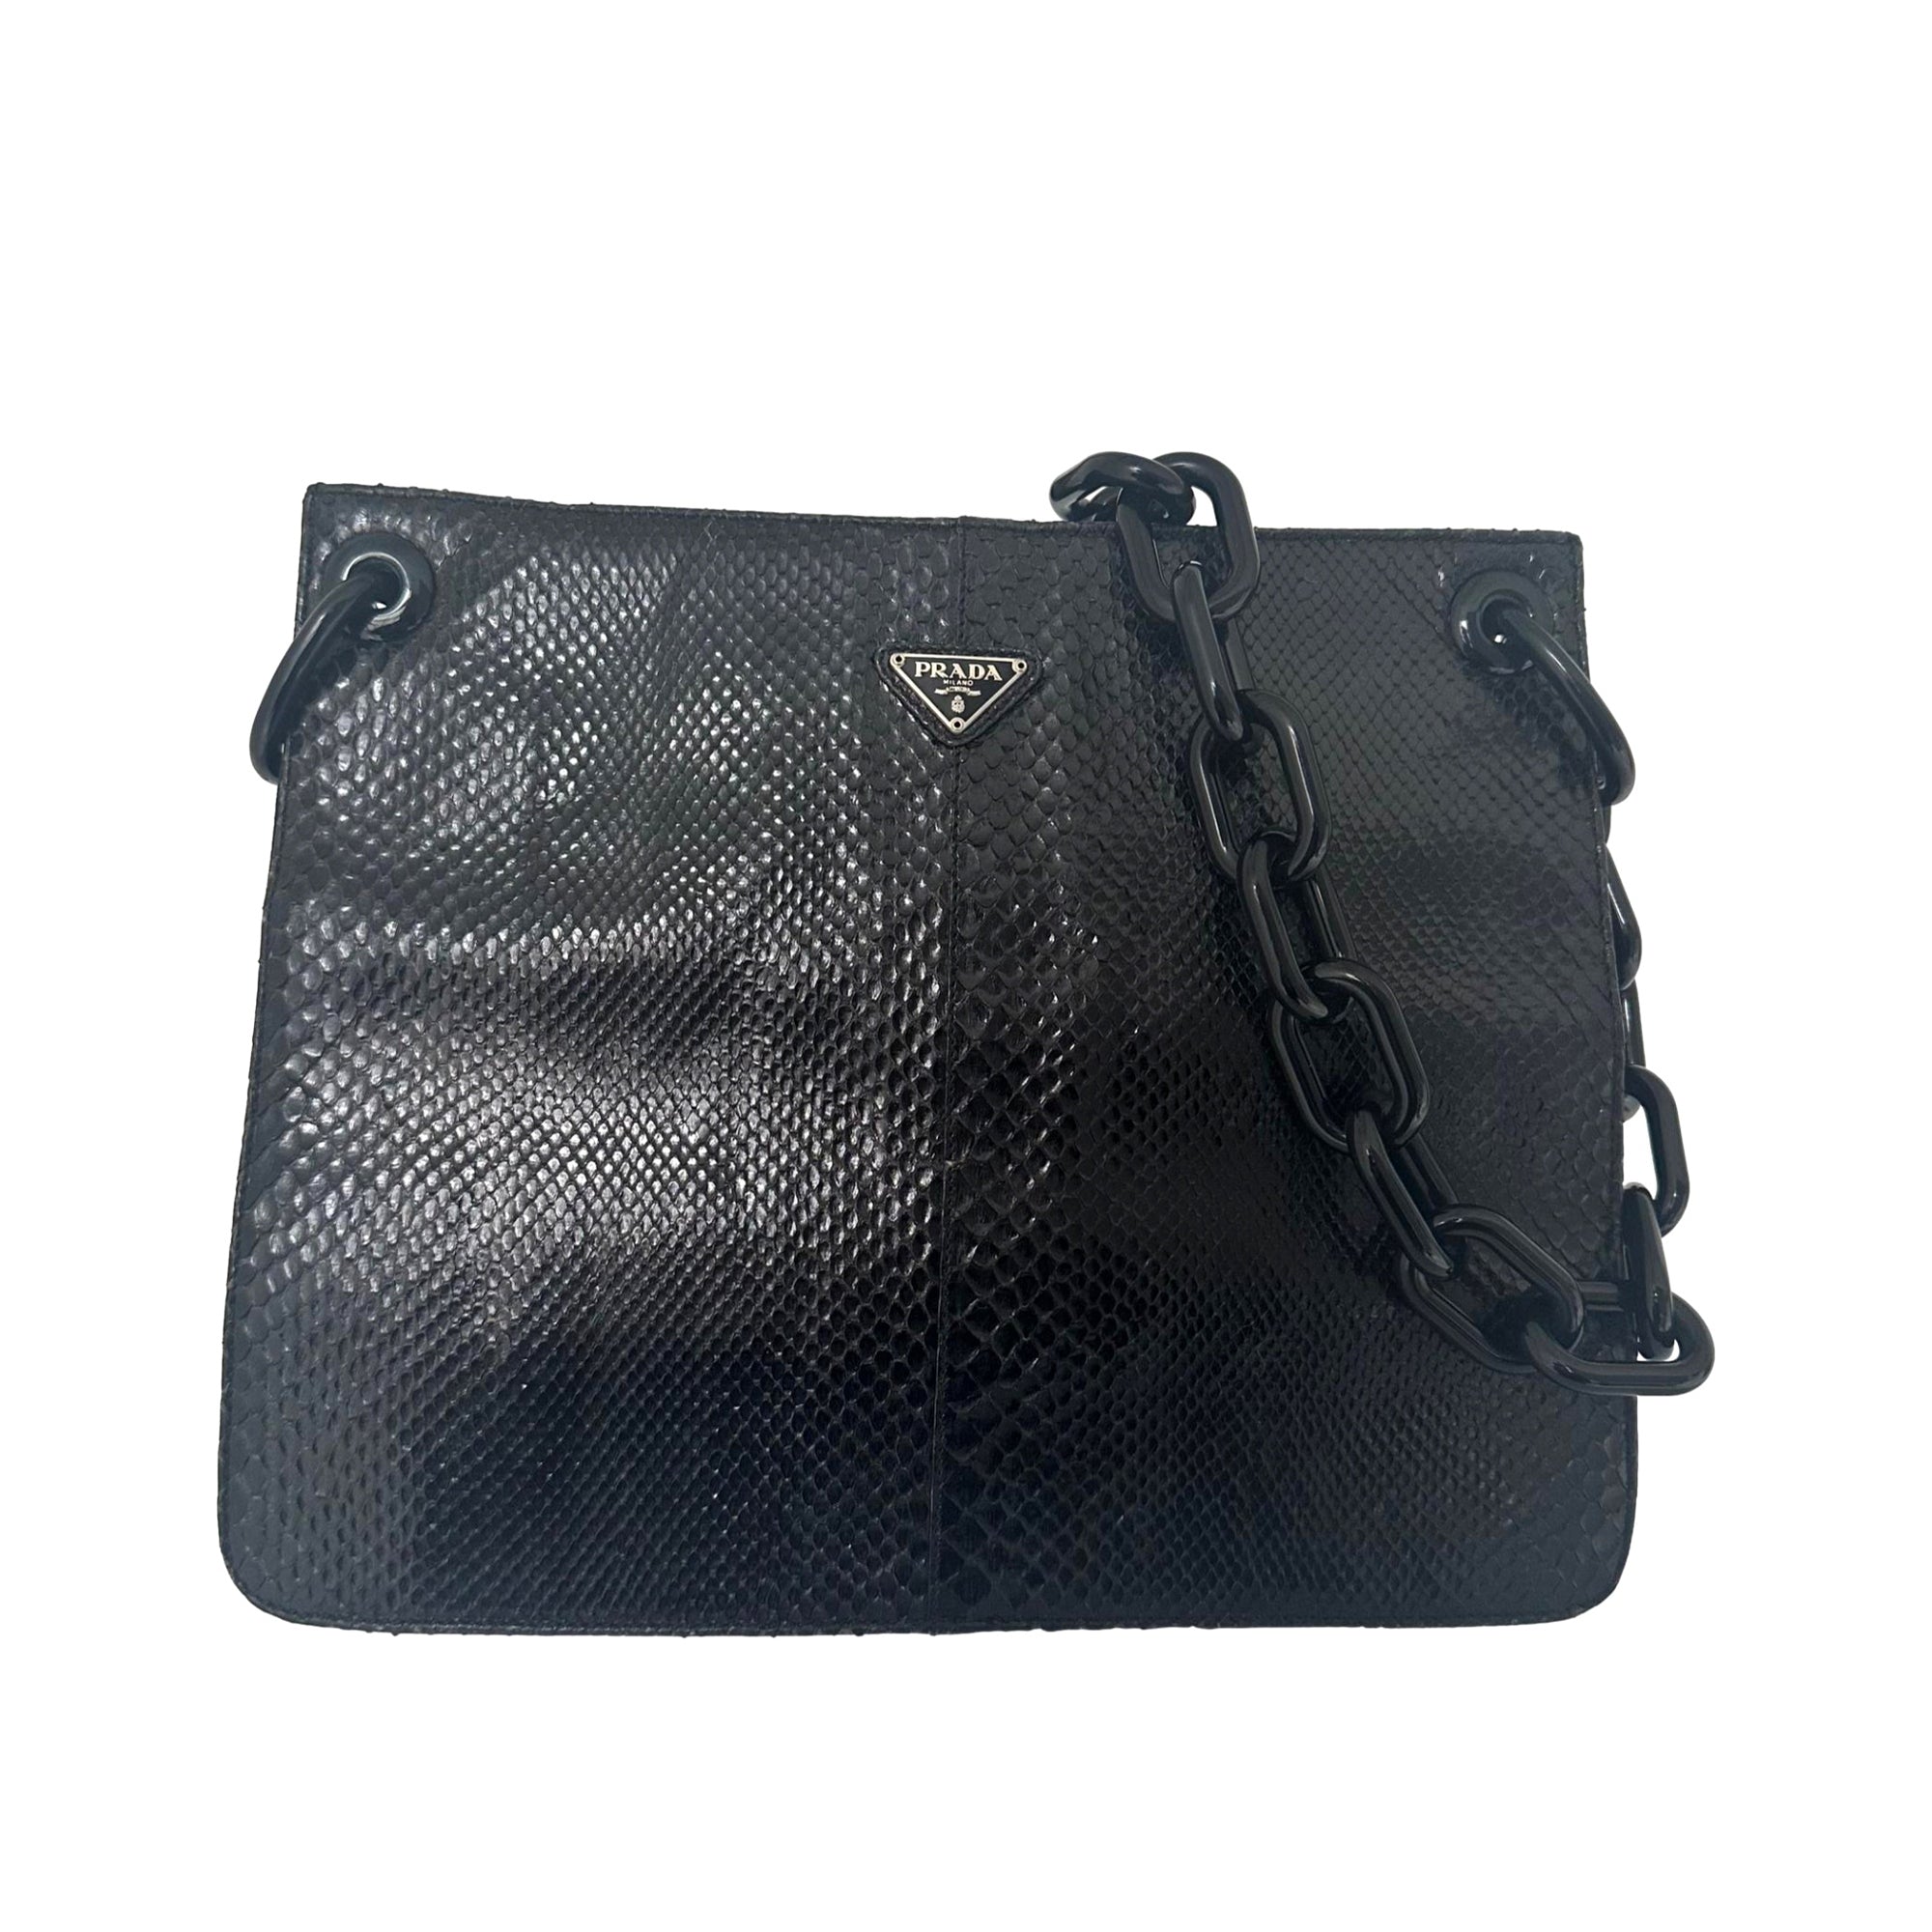 Prada Black Snakeskin Chain Bag